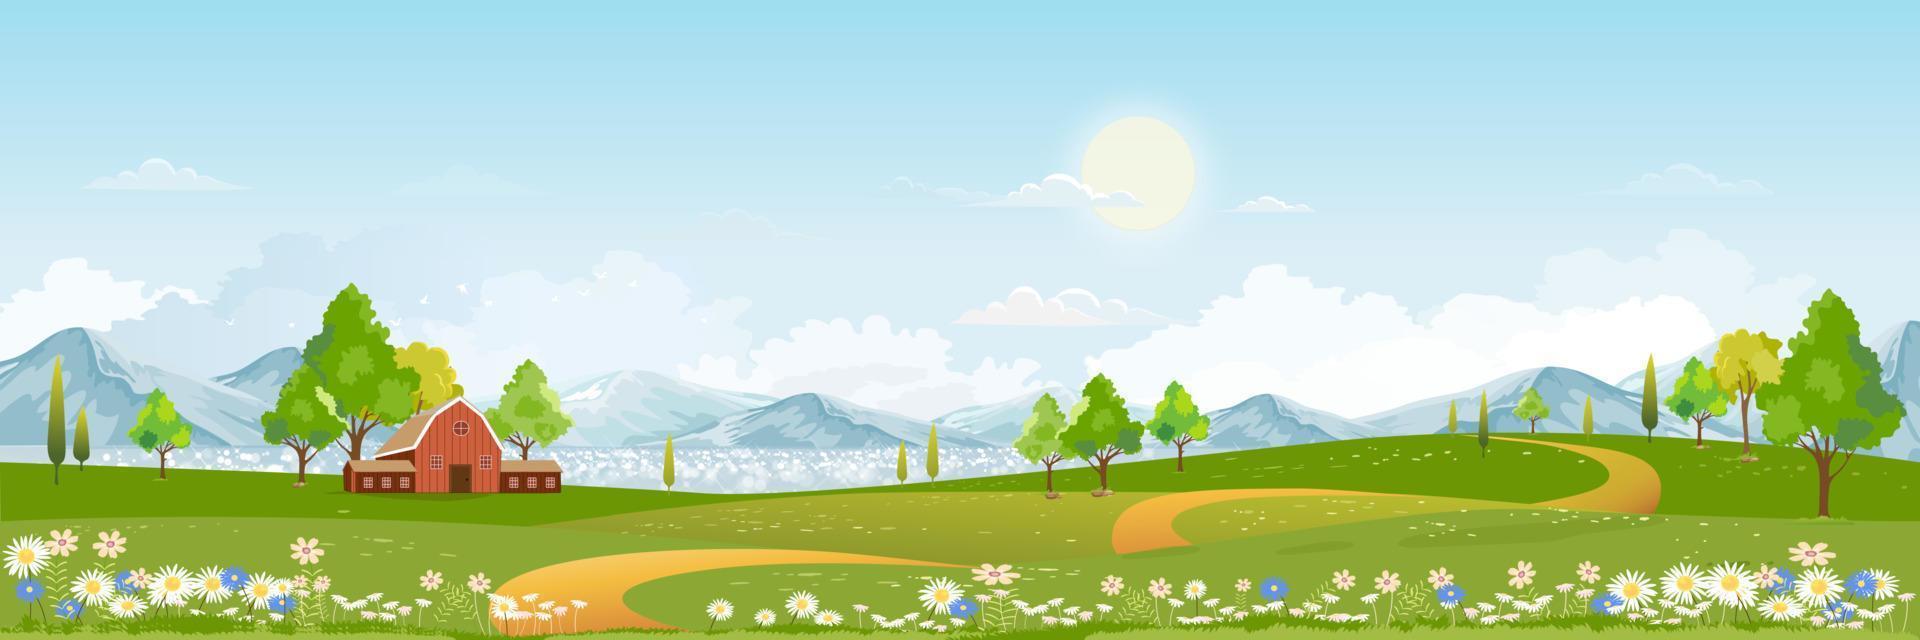 lente landschap in dorp met groen veld en zonsondergang, vector platte cartoon landelijke landbouwgrond met bergen en bos, roze en blauwe lucht, natuurlijke scène op het platteland, panoramisch uitzicht op zonnige dag zomer